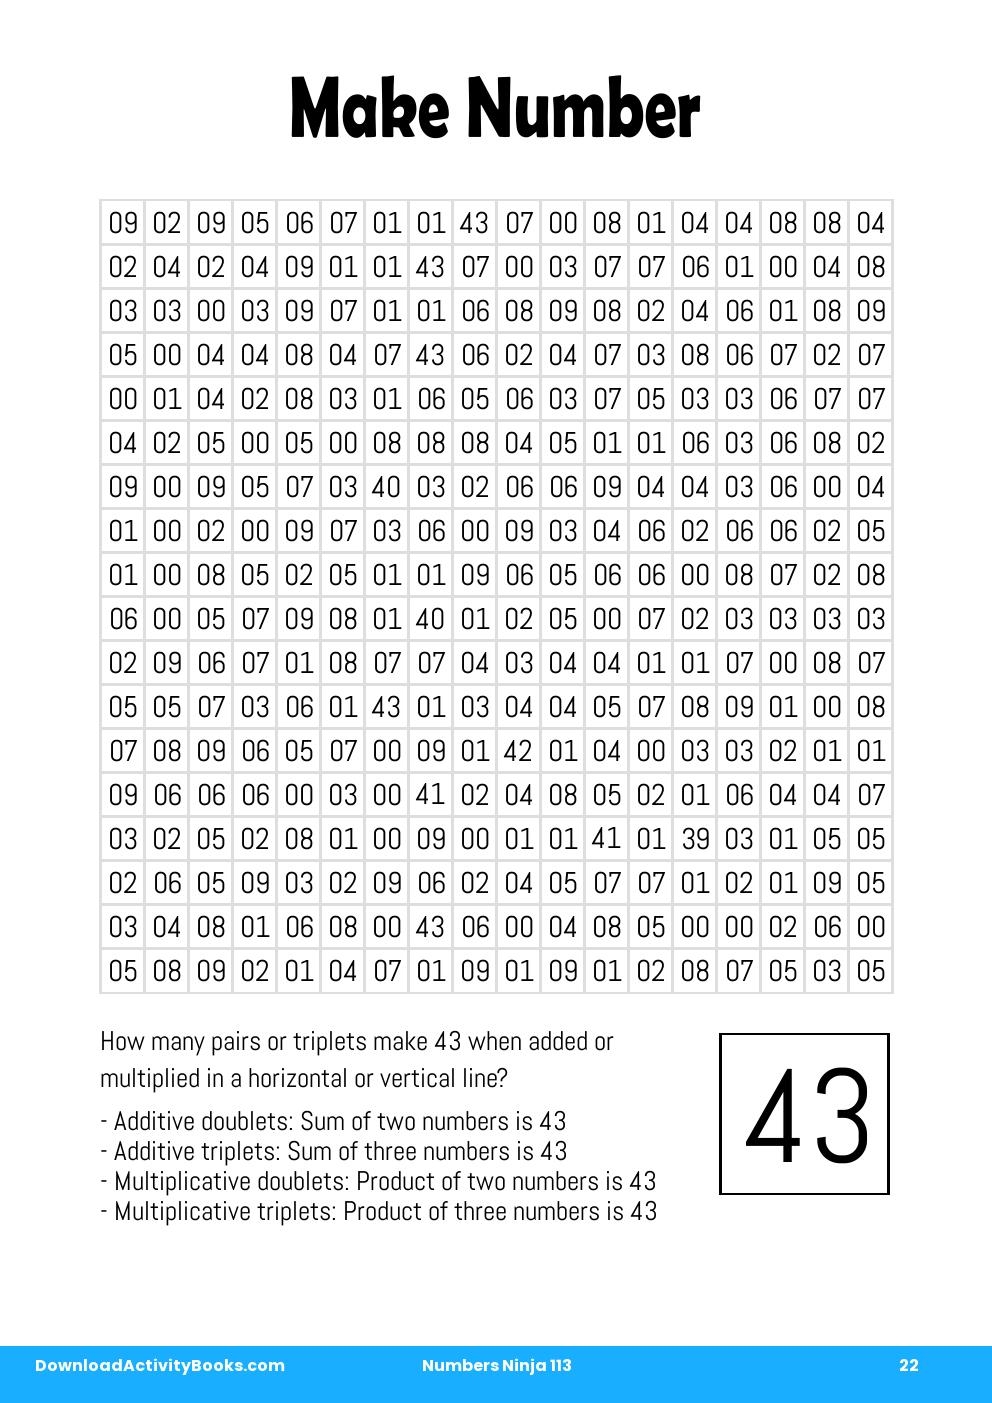 Make Number in Numbers Ninja 113